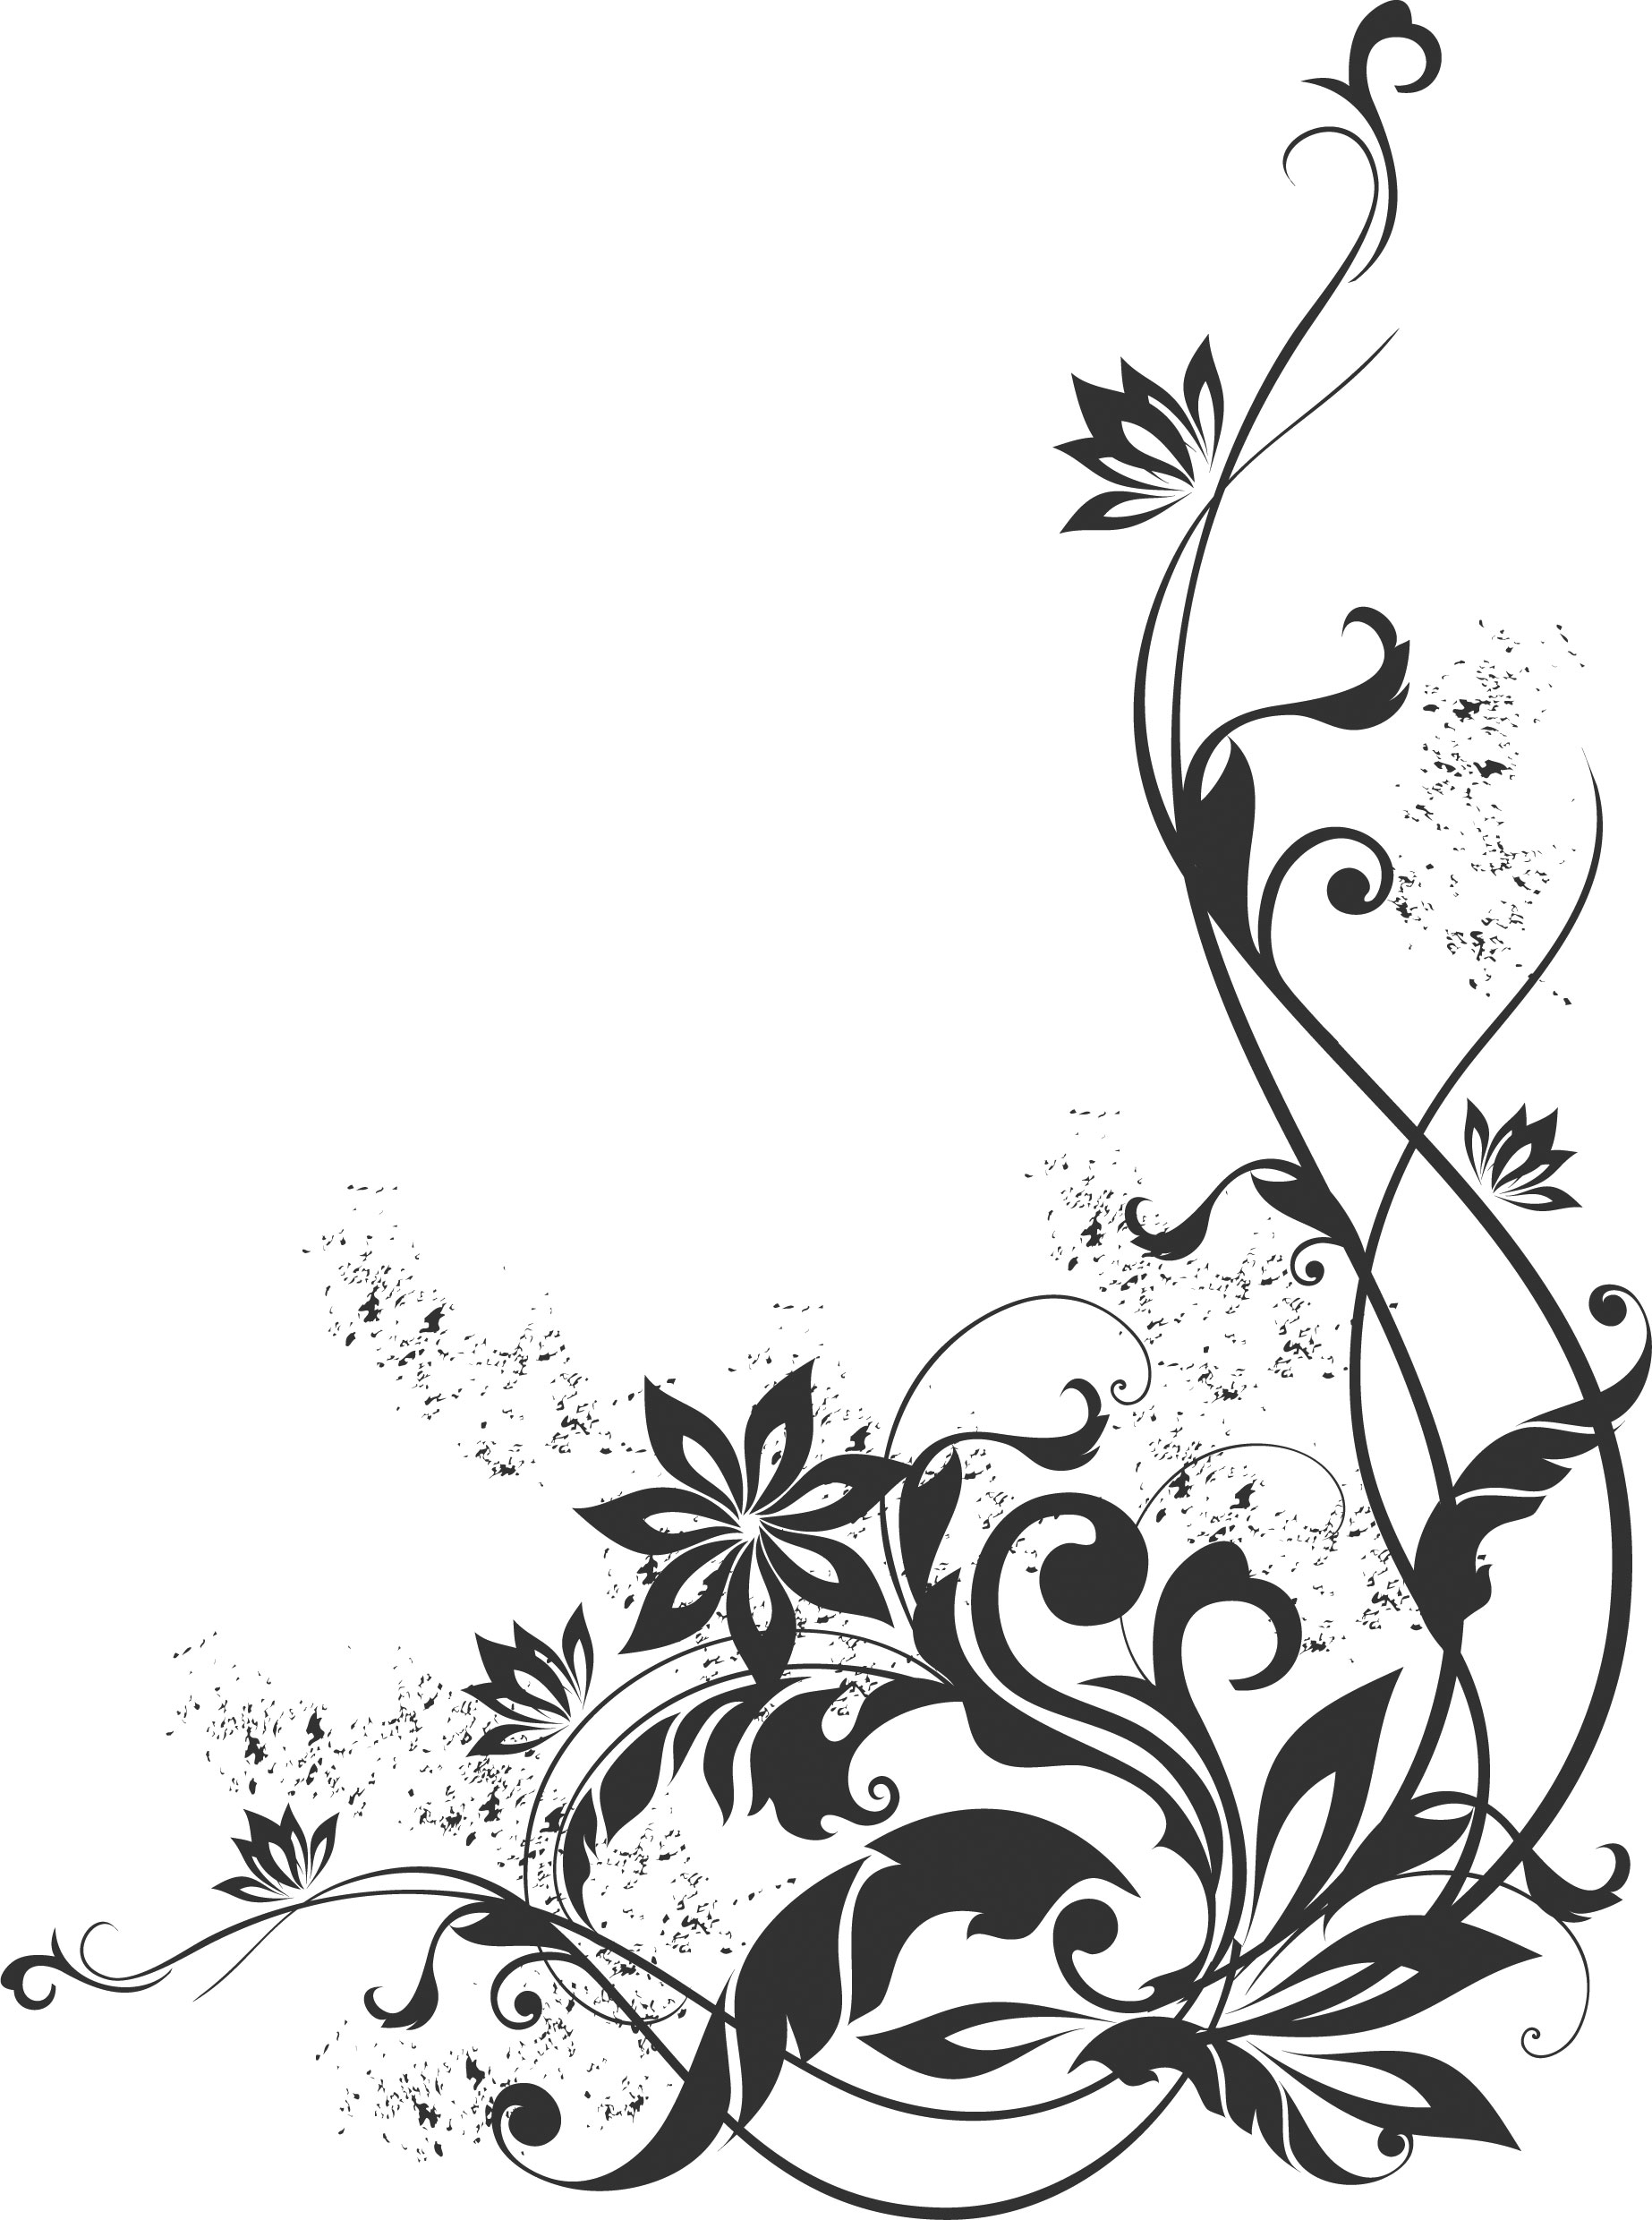 ポップでかわいい花のイラスト フリー素材 No 1189 白黒 蔓葉 コーナー